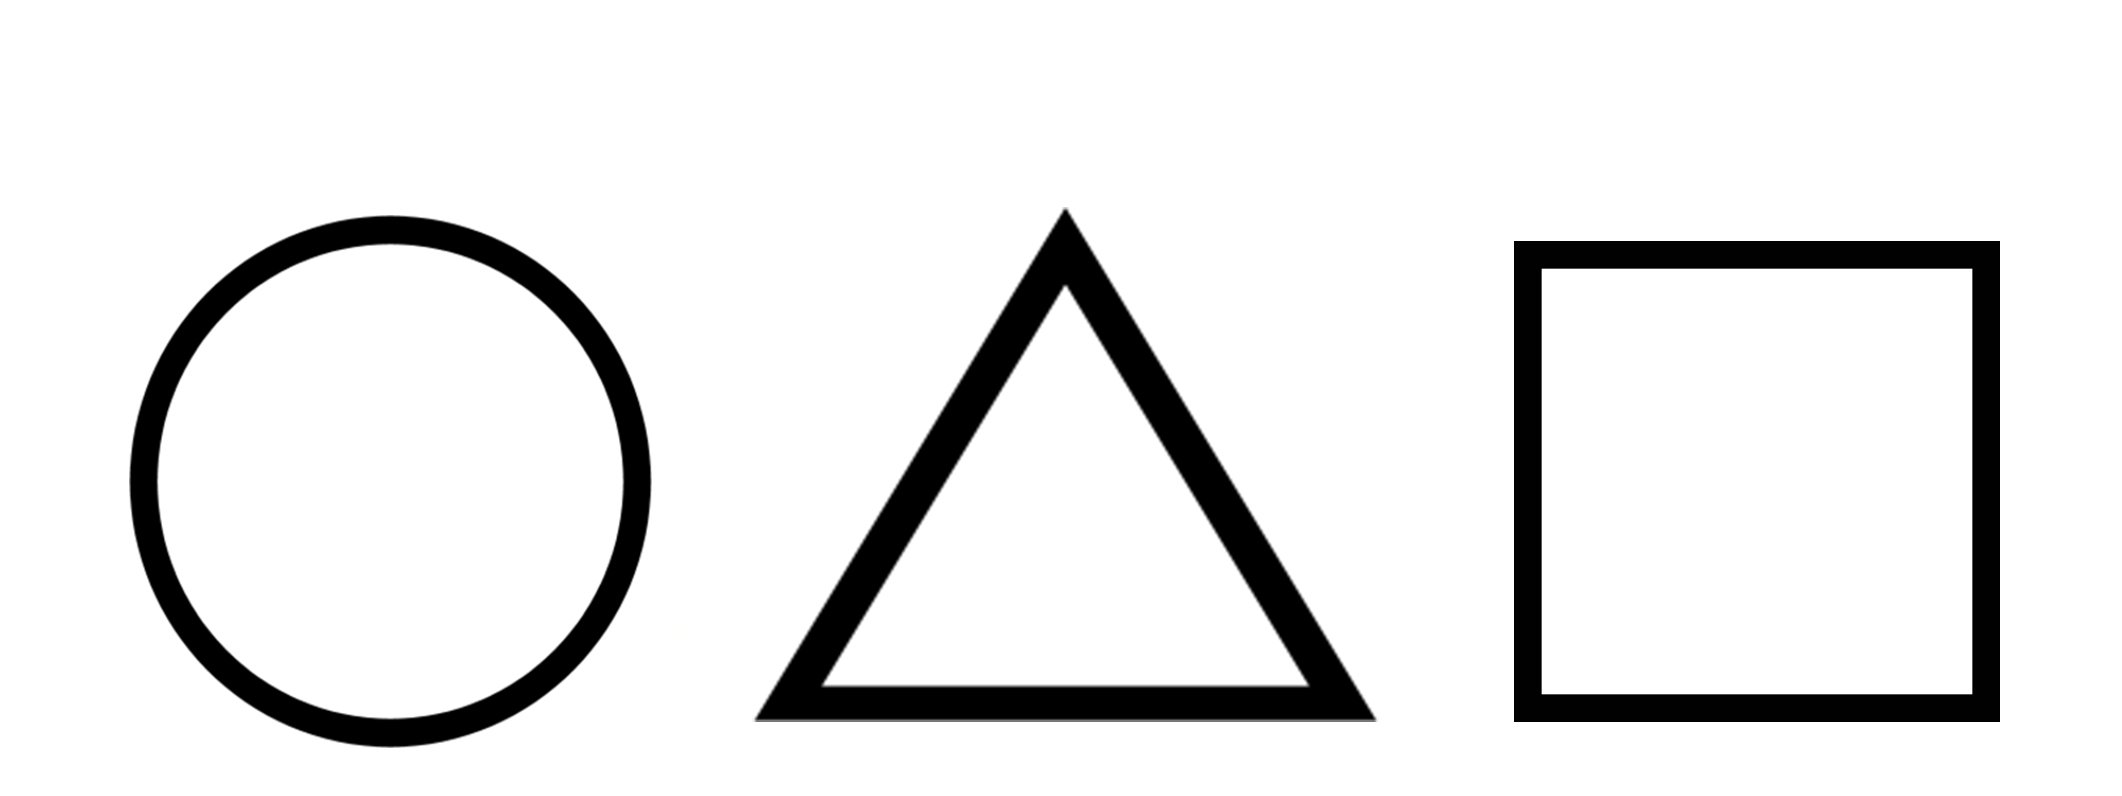 Круг, квадрат и треугольник